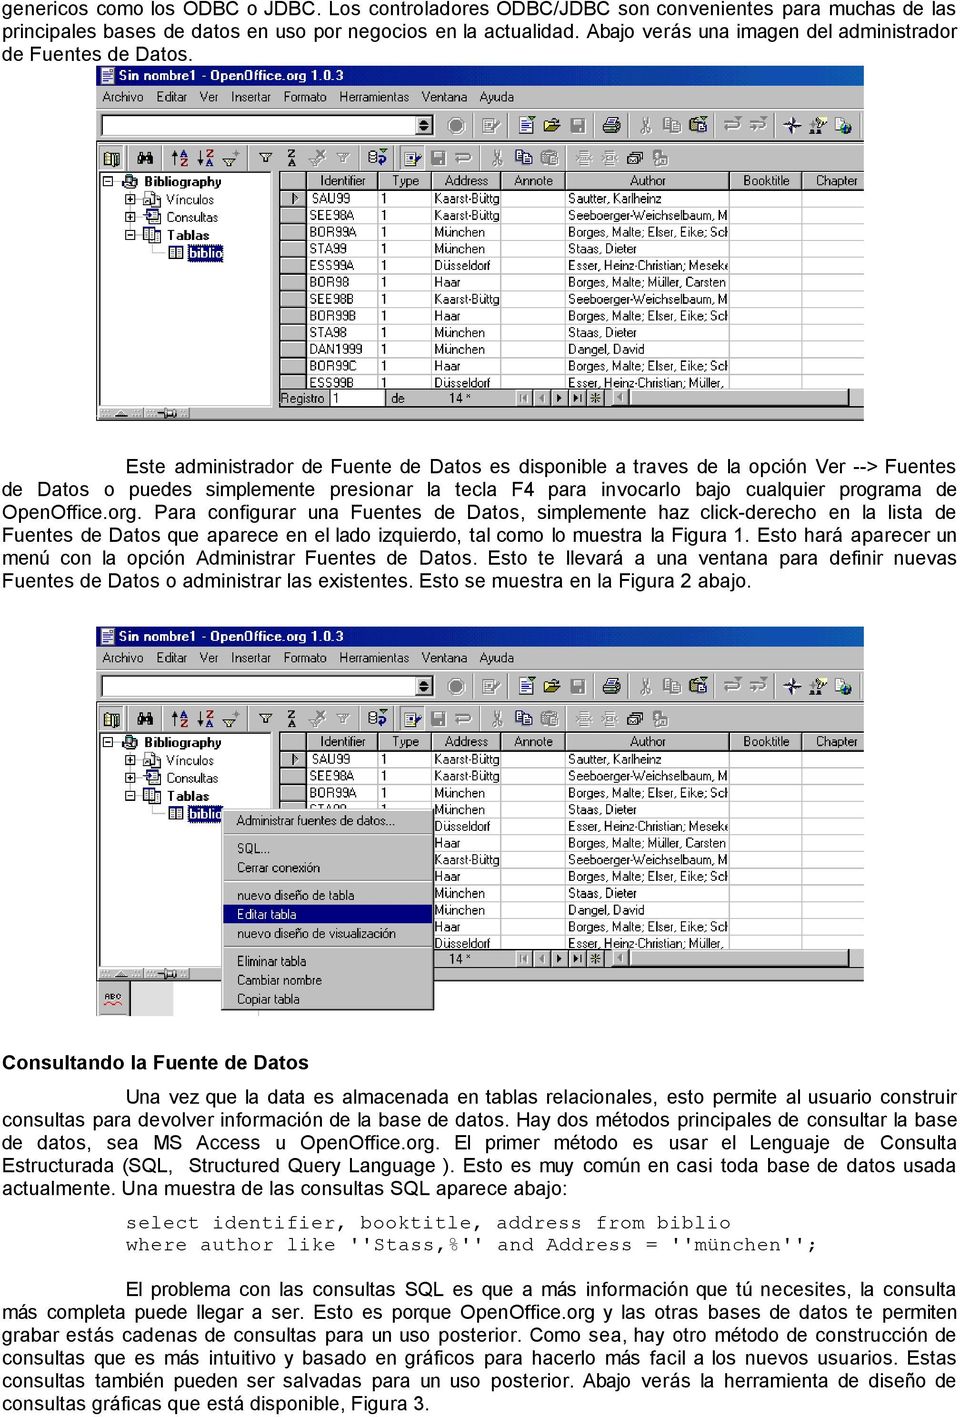 Este administrador de Fuente de Datos es disponible a traves de la opción Ver --> Fuentes de Datos o puedes simplemente presionar la tecla F4 para invocarlo bajo cualquier programa de OpenOffice.org.